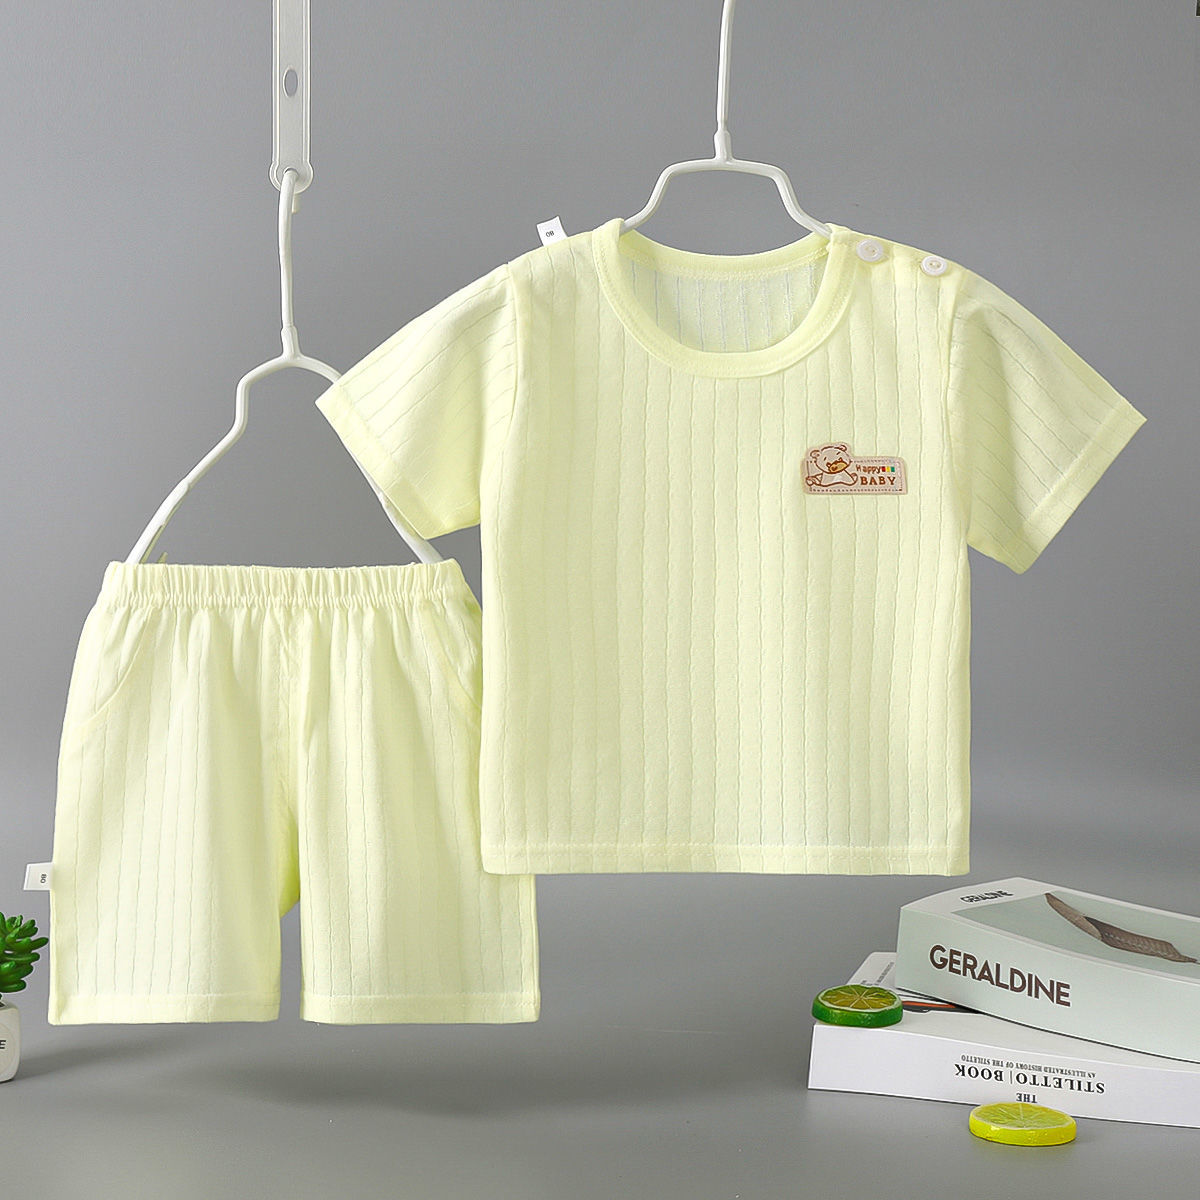 婴儿短袖套装夏季薄款宝宝衣服纯棉款男女儿童夏天短裤两件套夏装